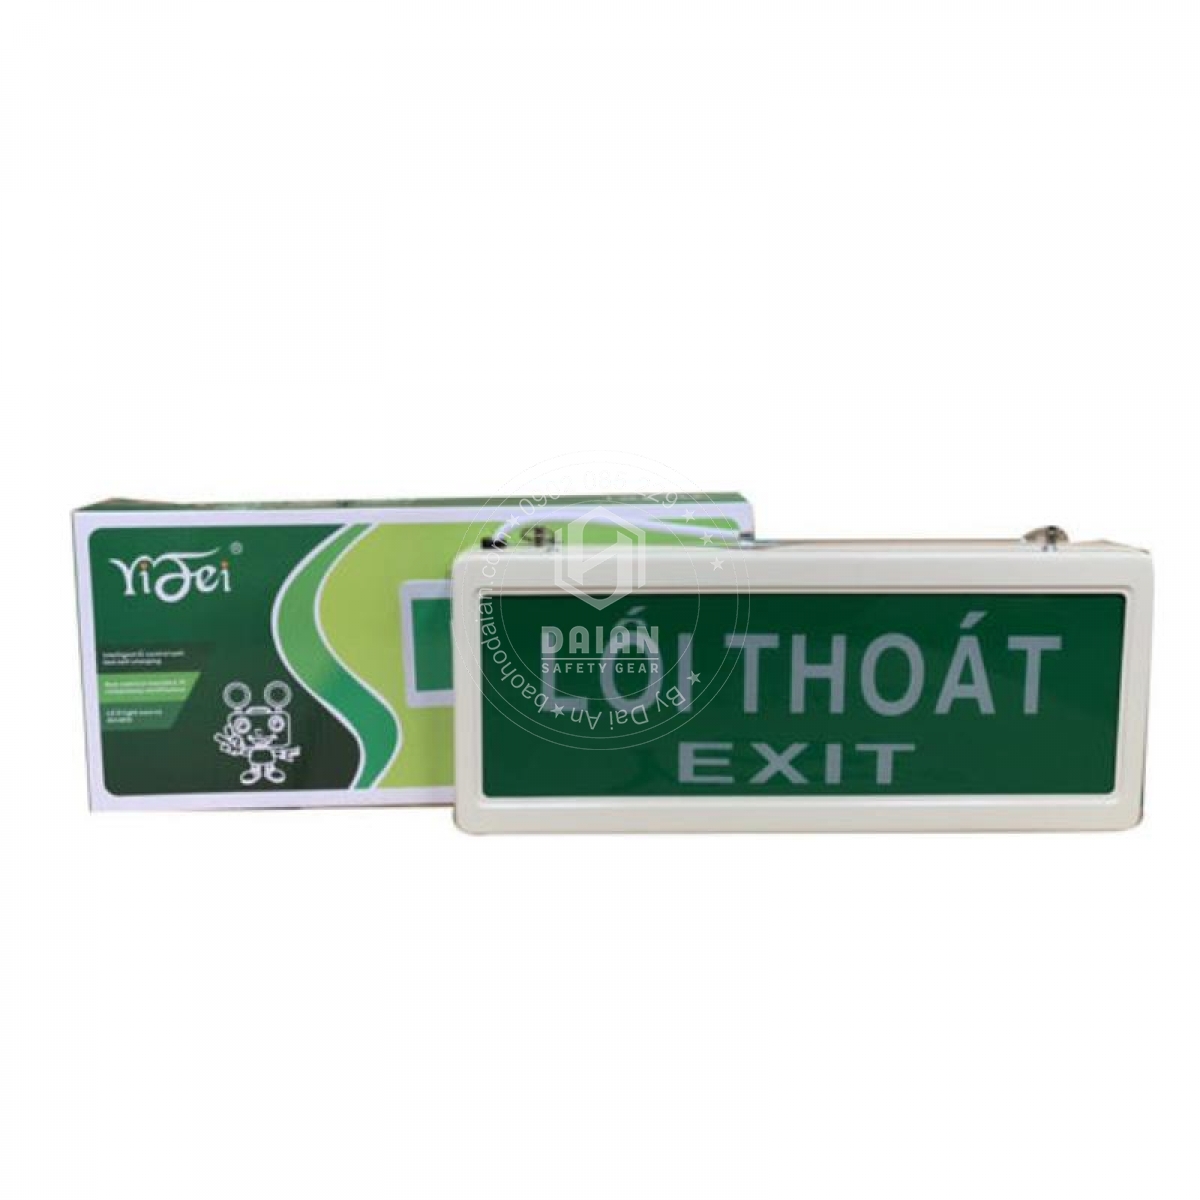 den-exit-thoat-hiem-yf208-exit-loi-thoat